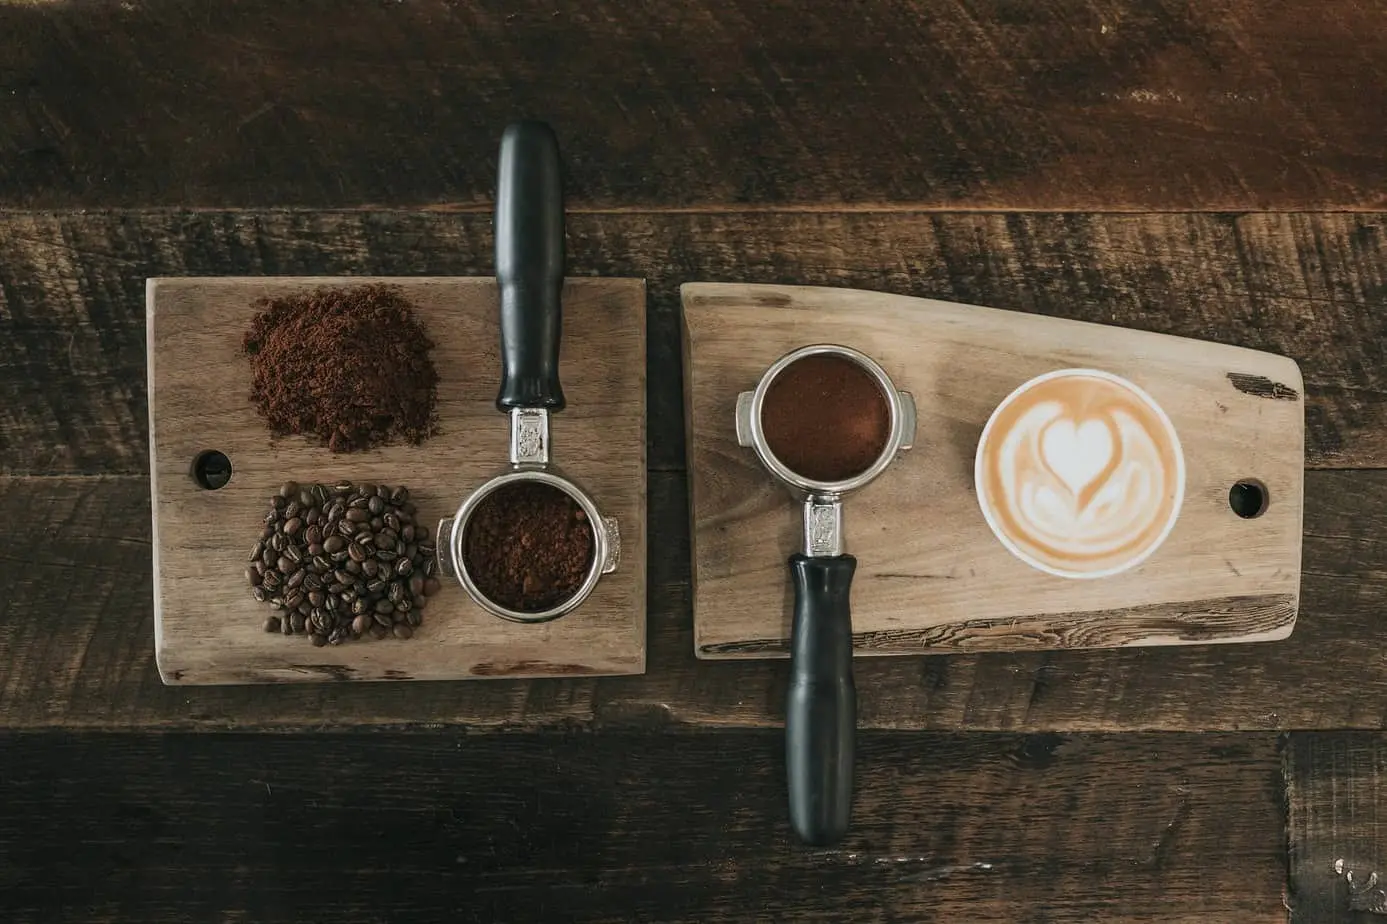 وصفات لتحضير حبوب البن وفنجان من القهوة على لوح خشبي.